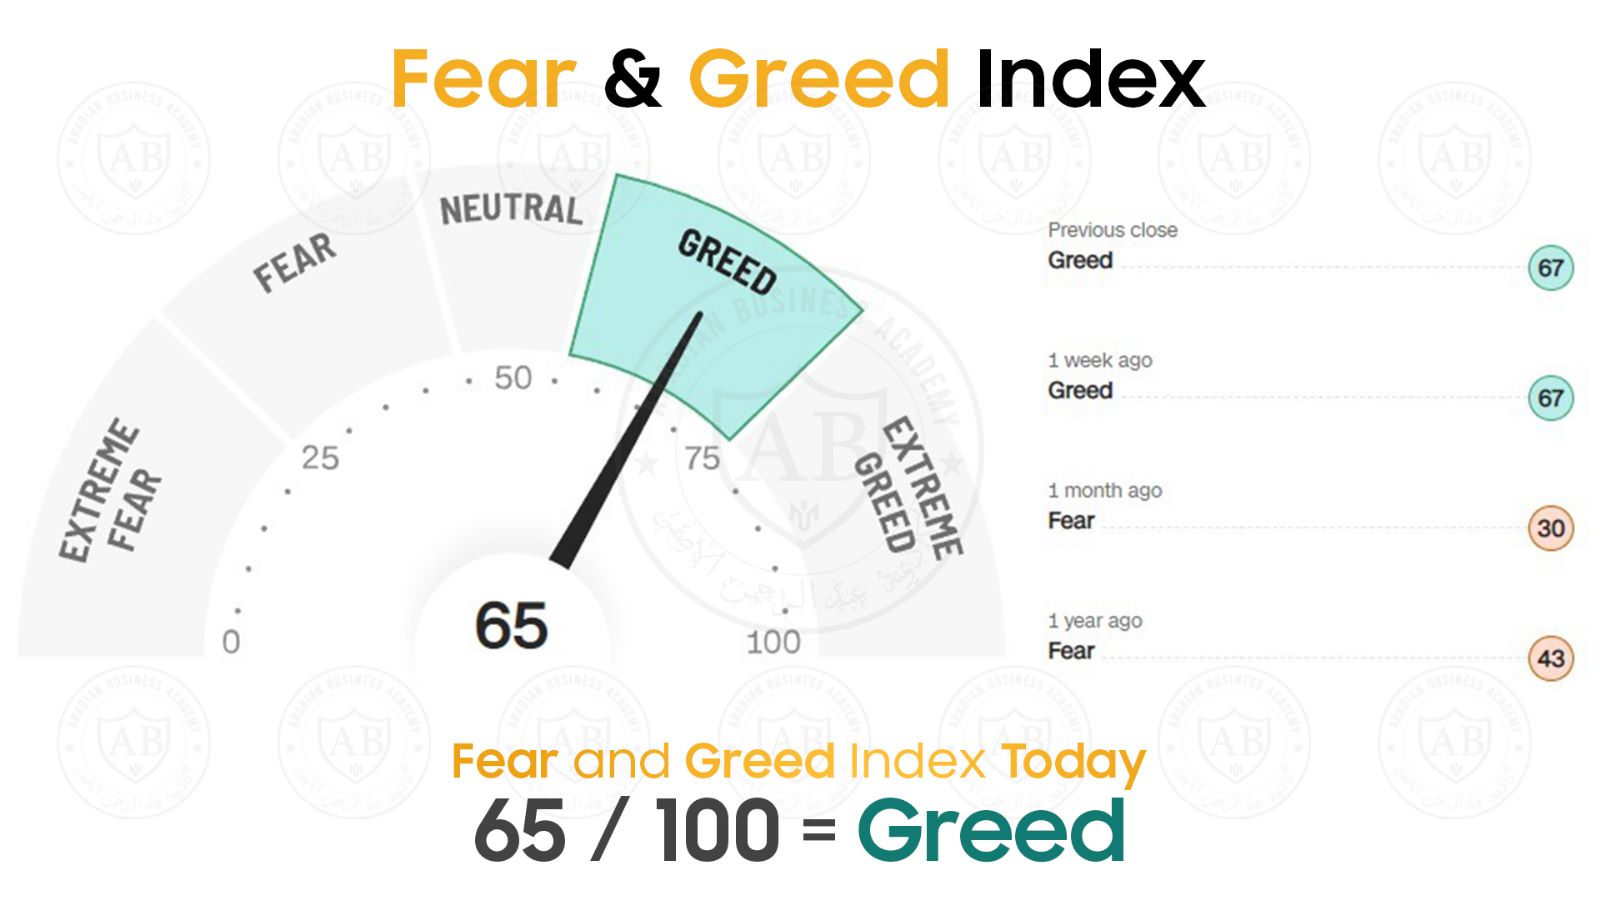 مؤشر  Fear and Greed  في أسواق الأسهم يشير  الى 65 /100  لجلسة اليوم